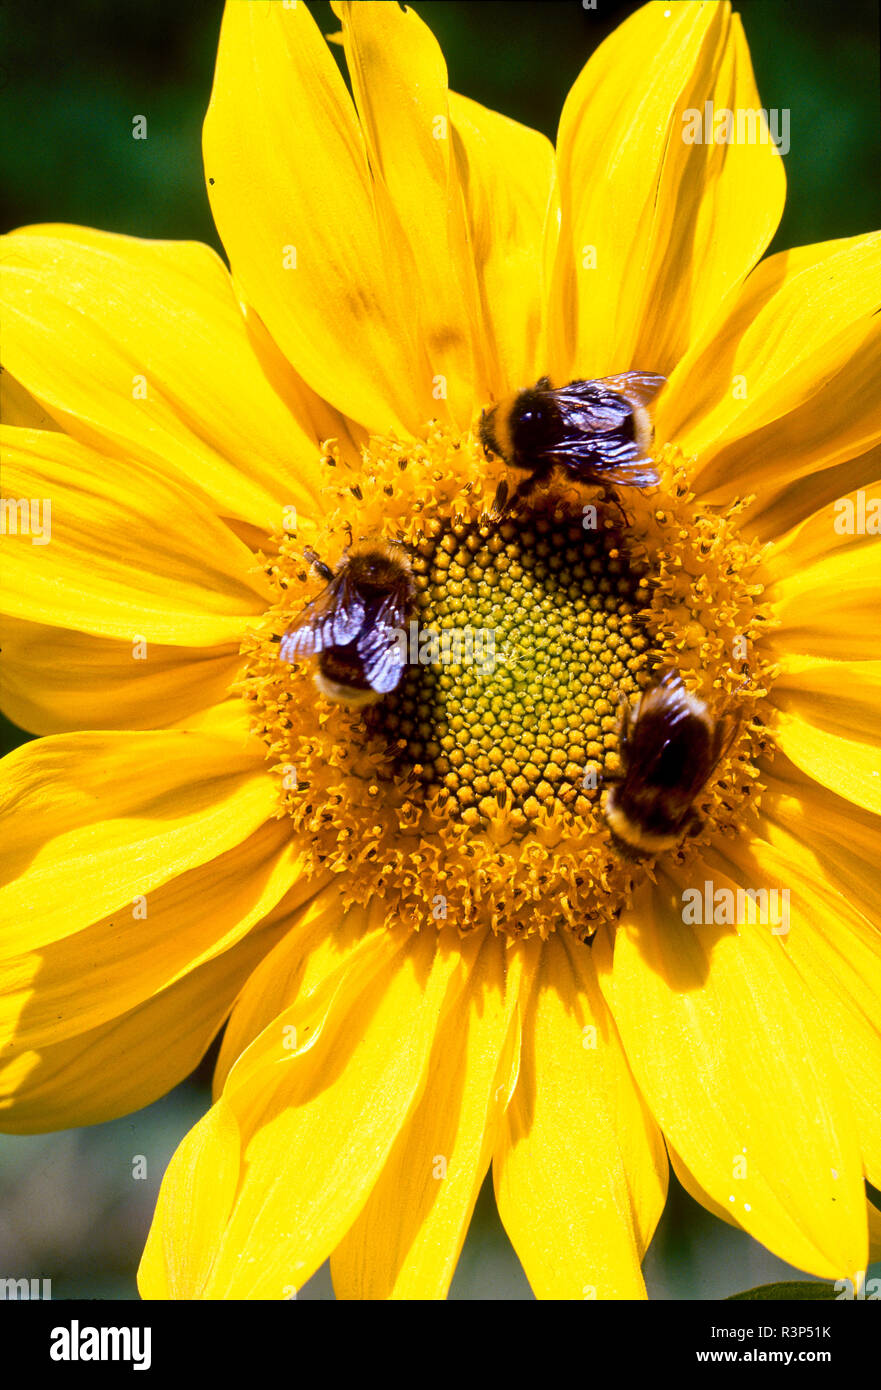 Honey Bees on sunflower, Victoria, British Columbia Stock Photo